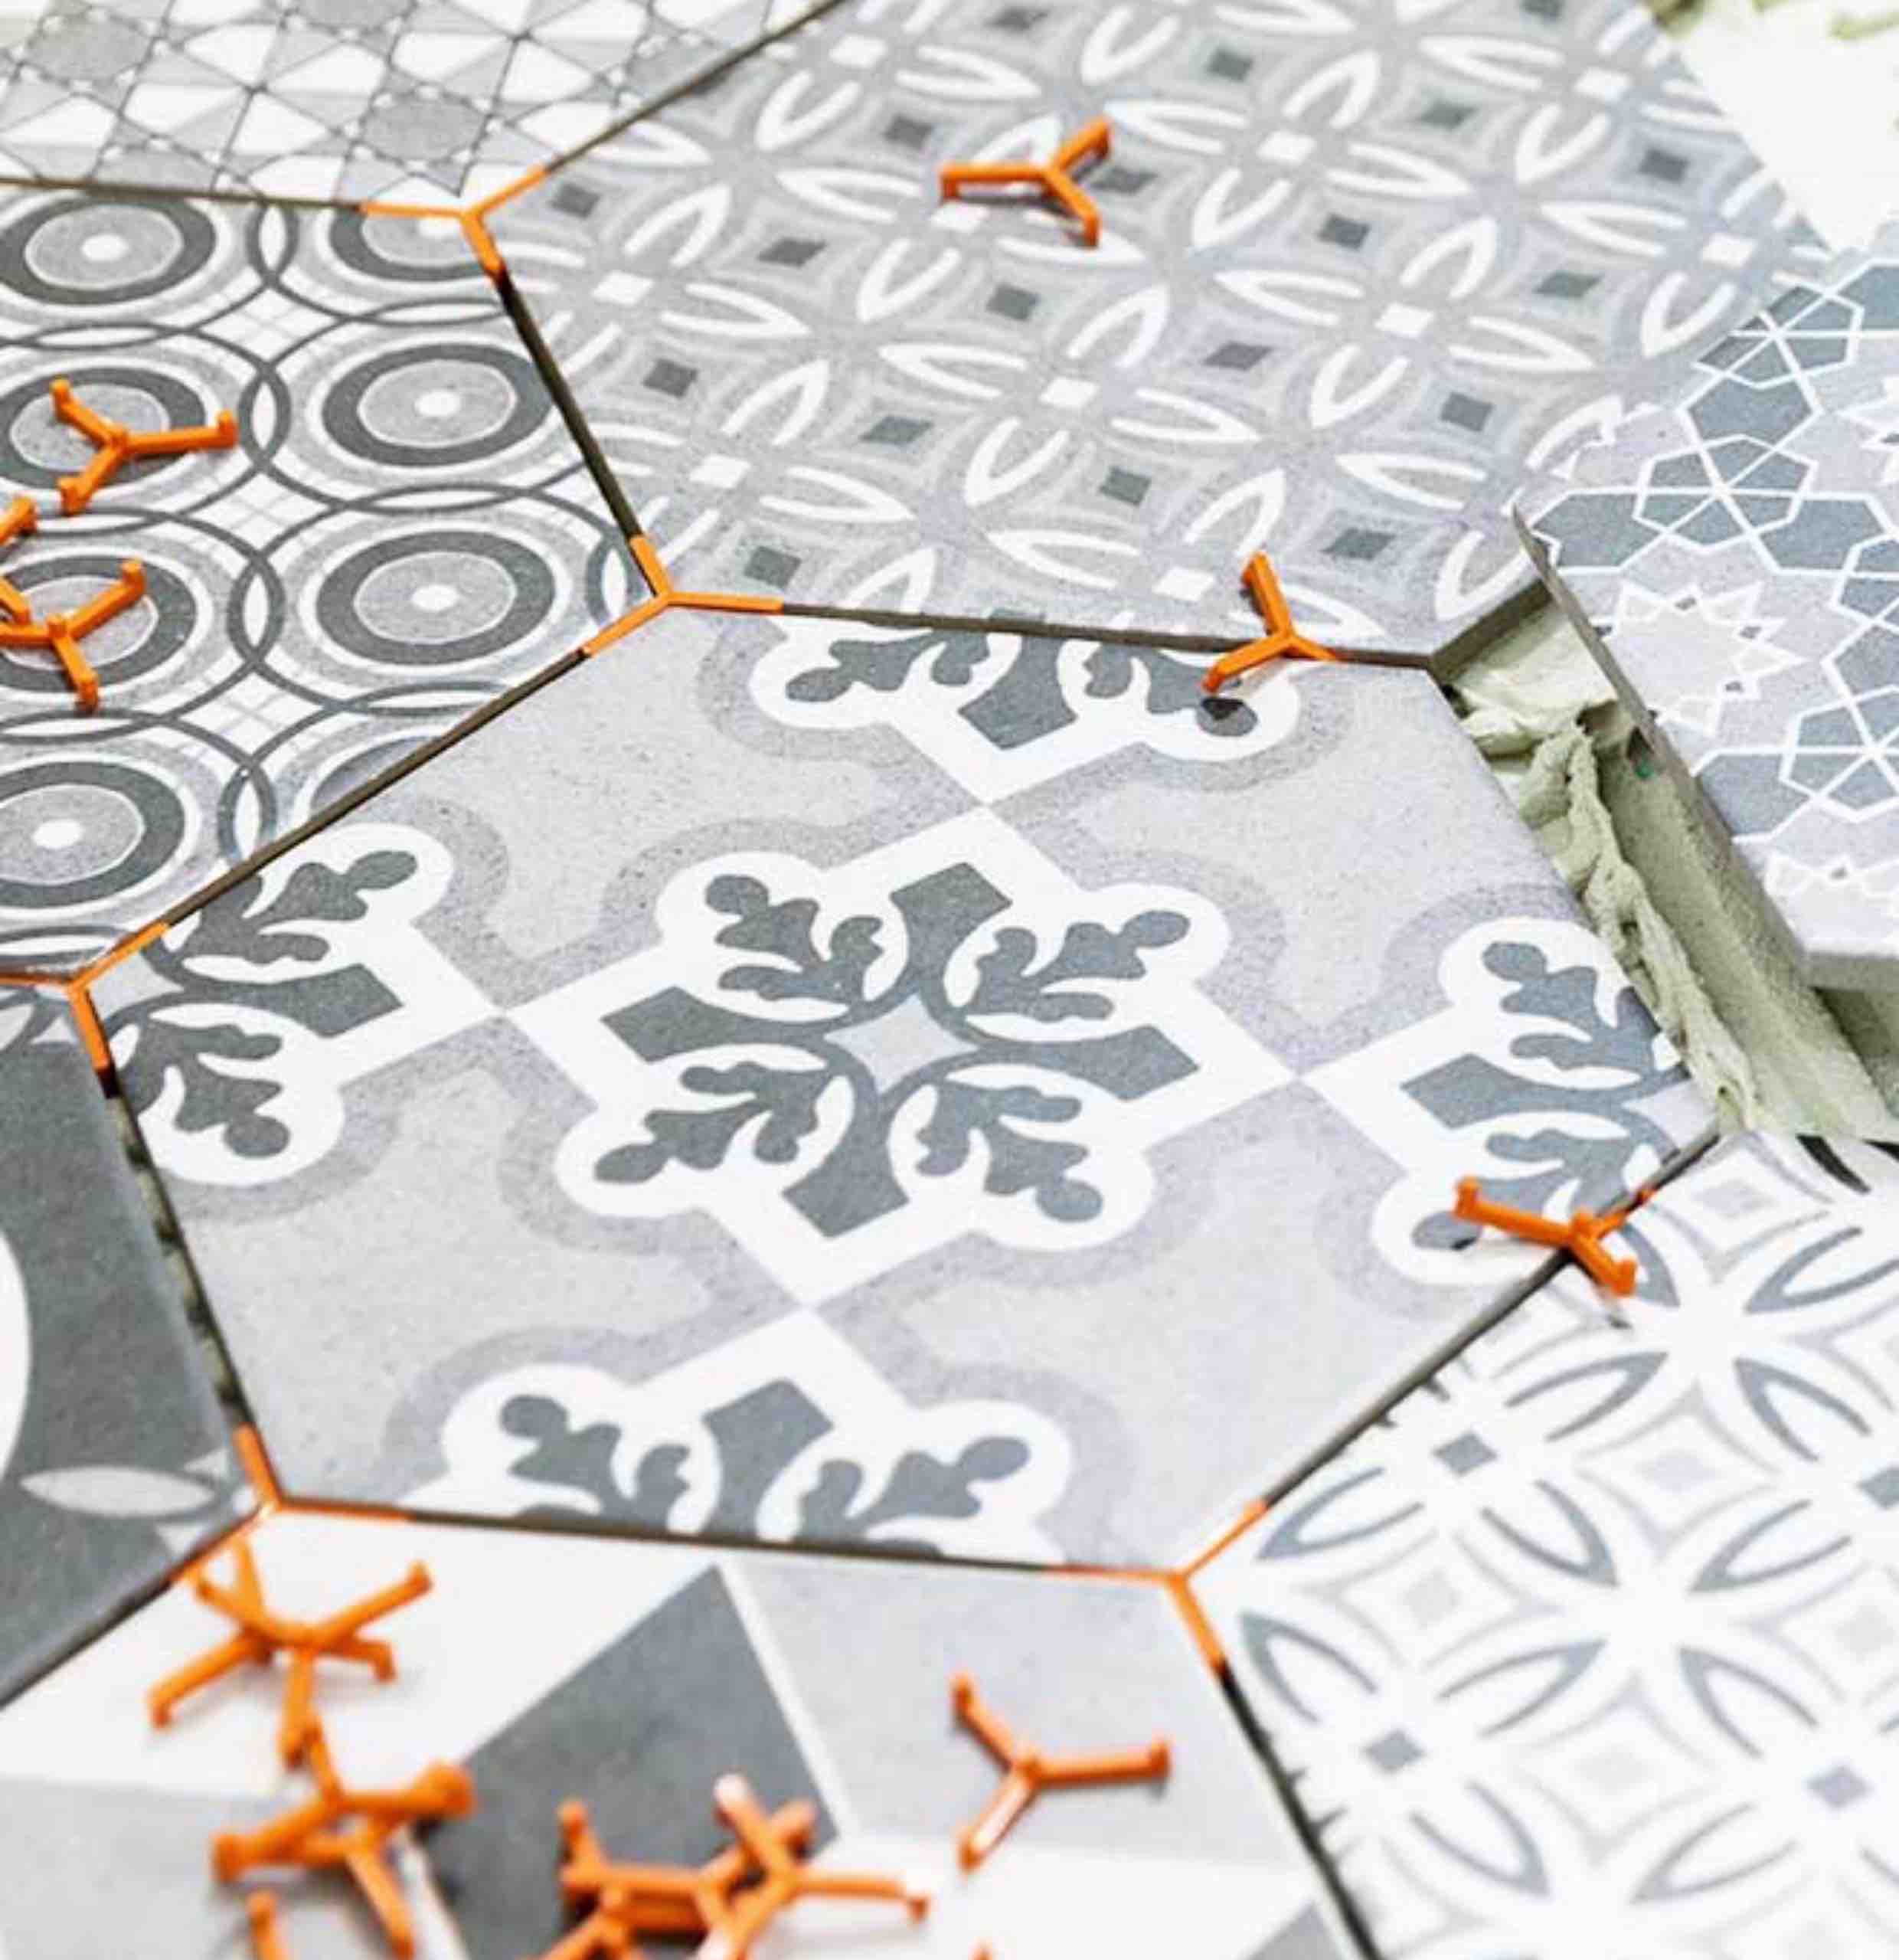 Trendy hexagonal tiles installed by Footprints Floors in Tampa.